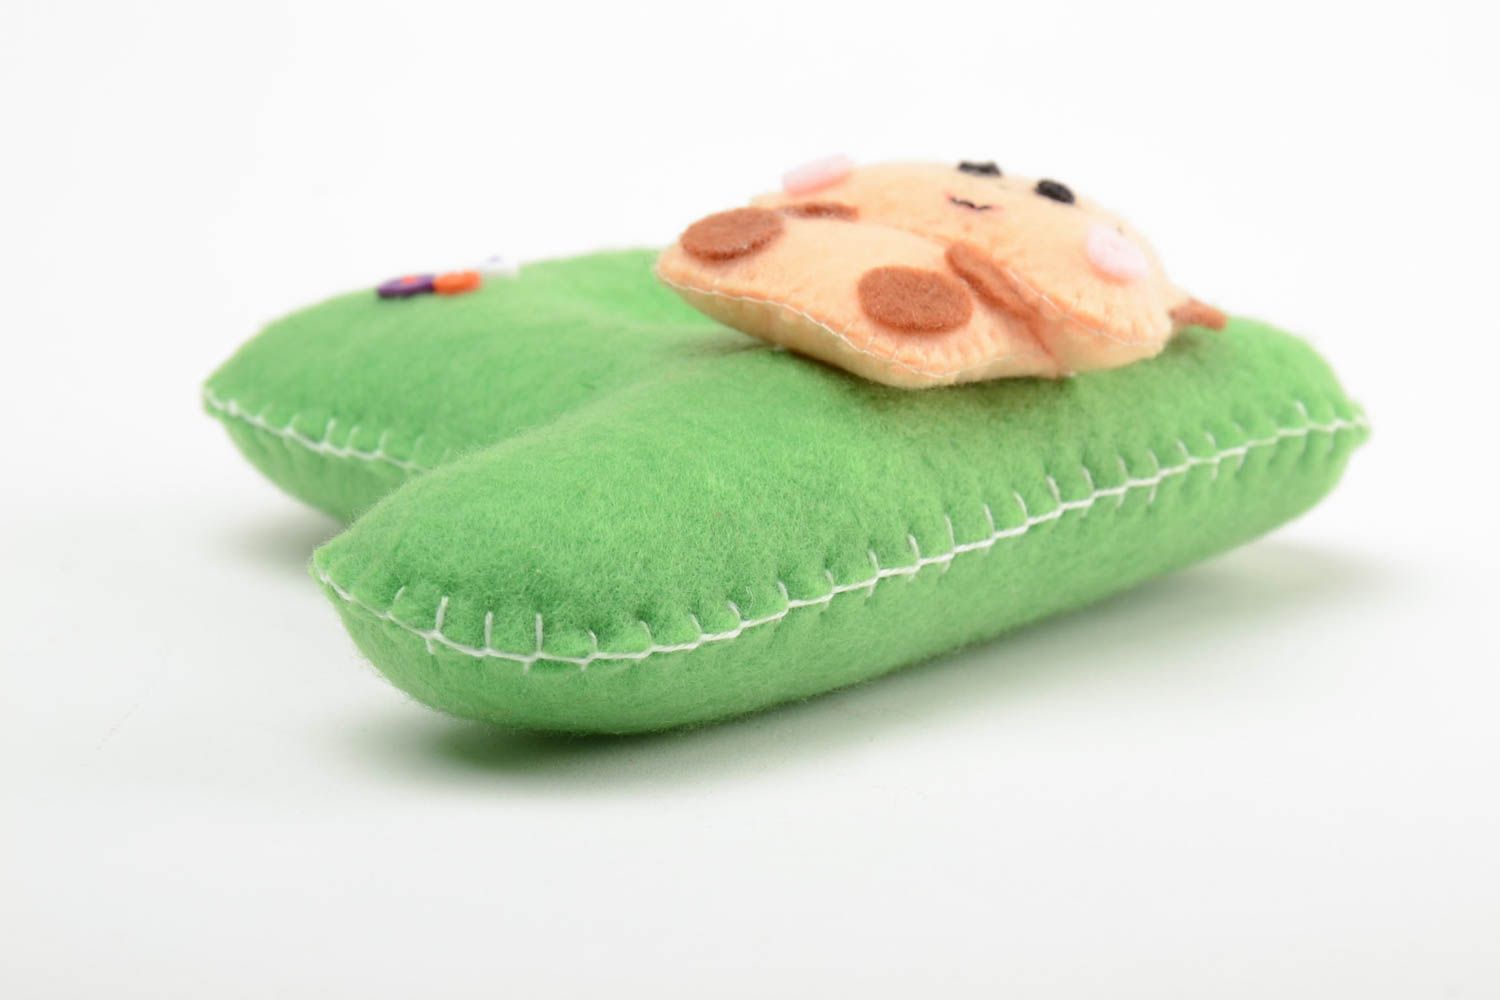 Декоративная буква игрушка из фетра ручной работы зеленая оригинальная для ребенка фото 4